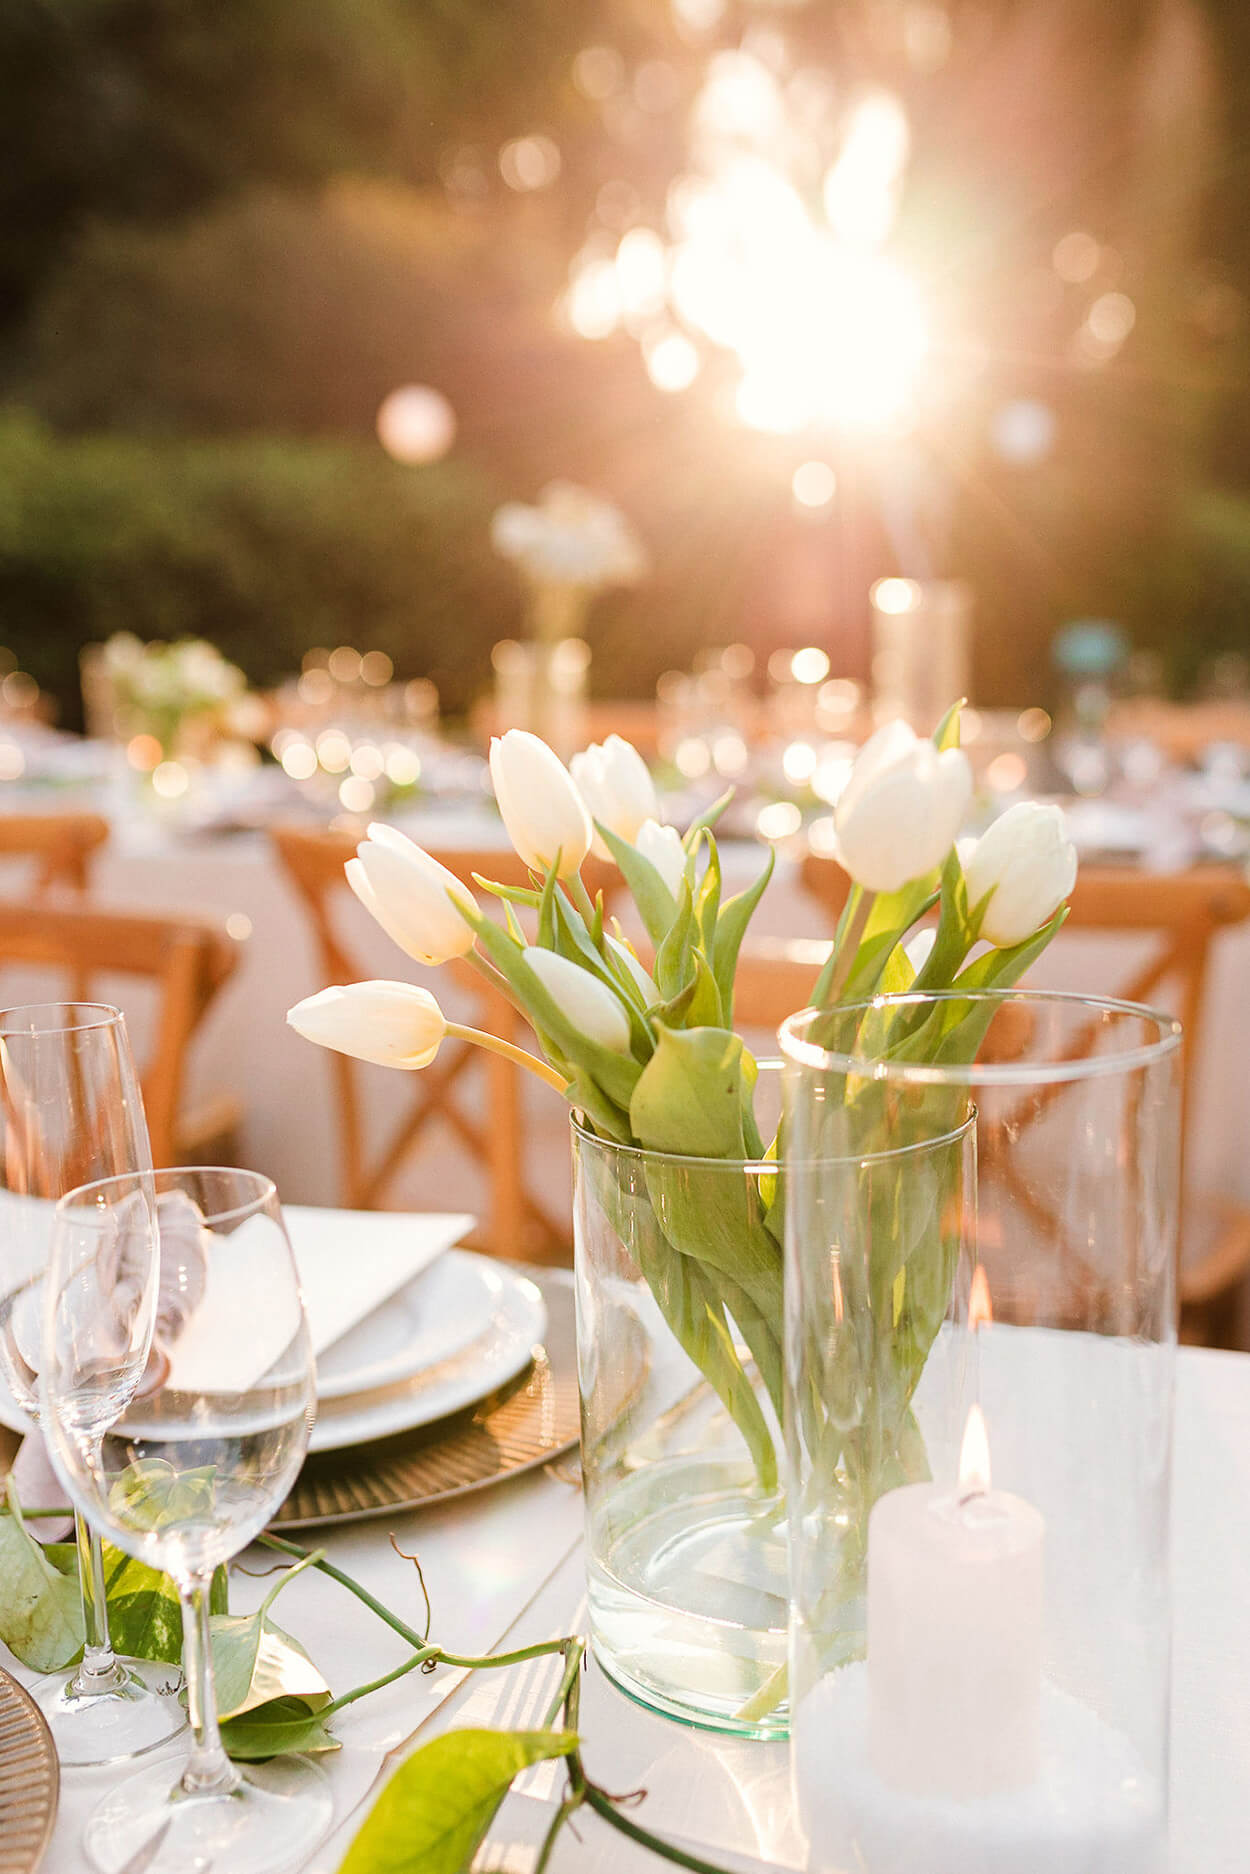 mesa decorada com vaso de vidro com tulipas brancas